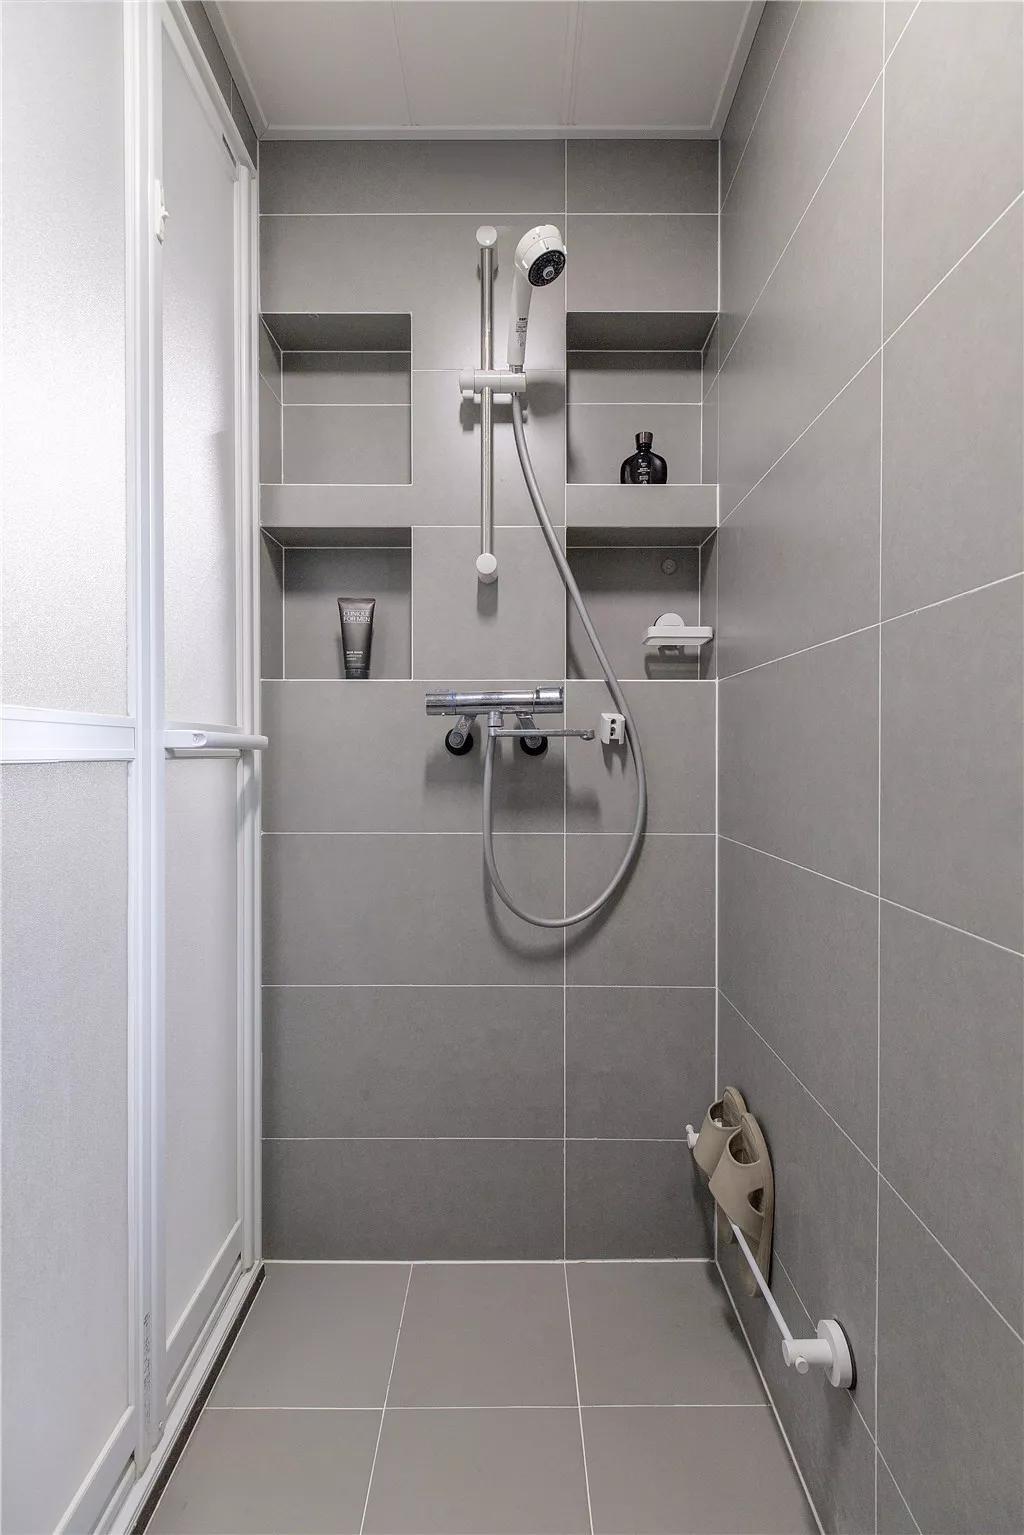 淋浴房墙地面铺设灰色亚光砖,在淋浴花洒的两侧都做了壁龛收纳,用于